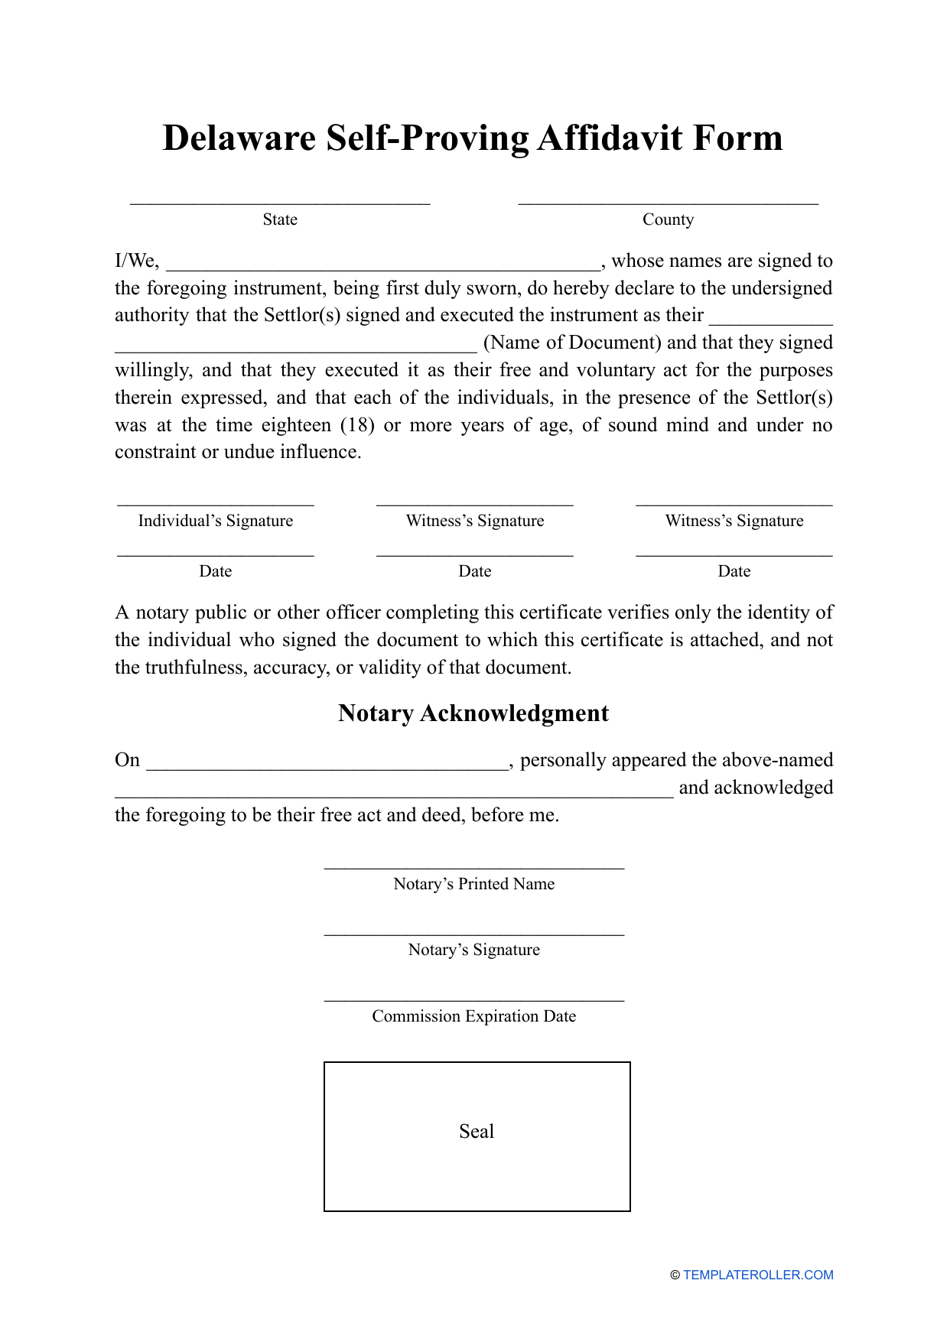 Self-proving Affidavit Form - Delaware, Page 1